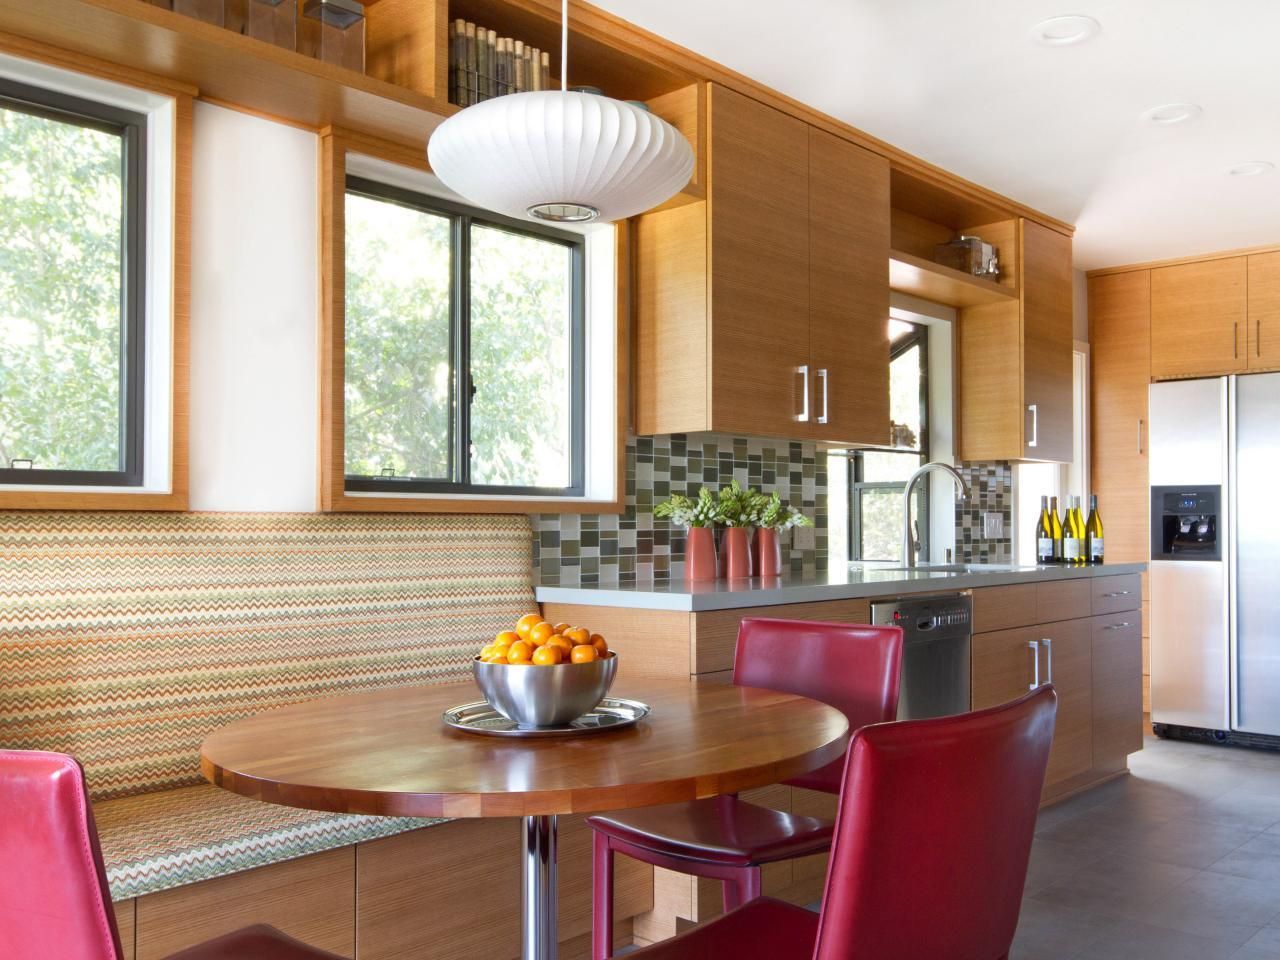 Ronde tafel in de keuken: een klassiek accent in een modern interieur